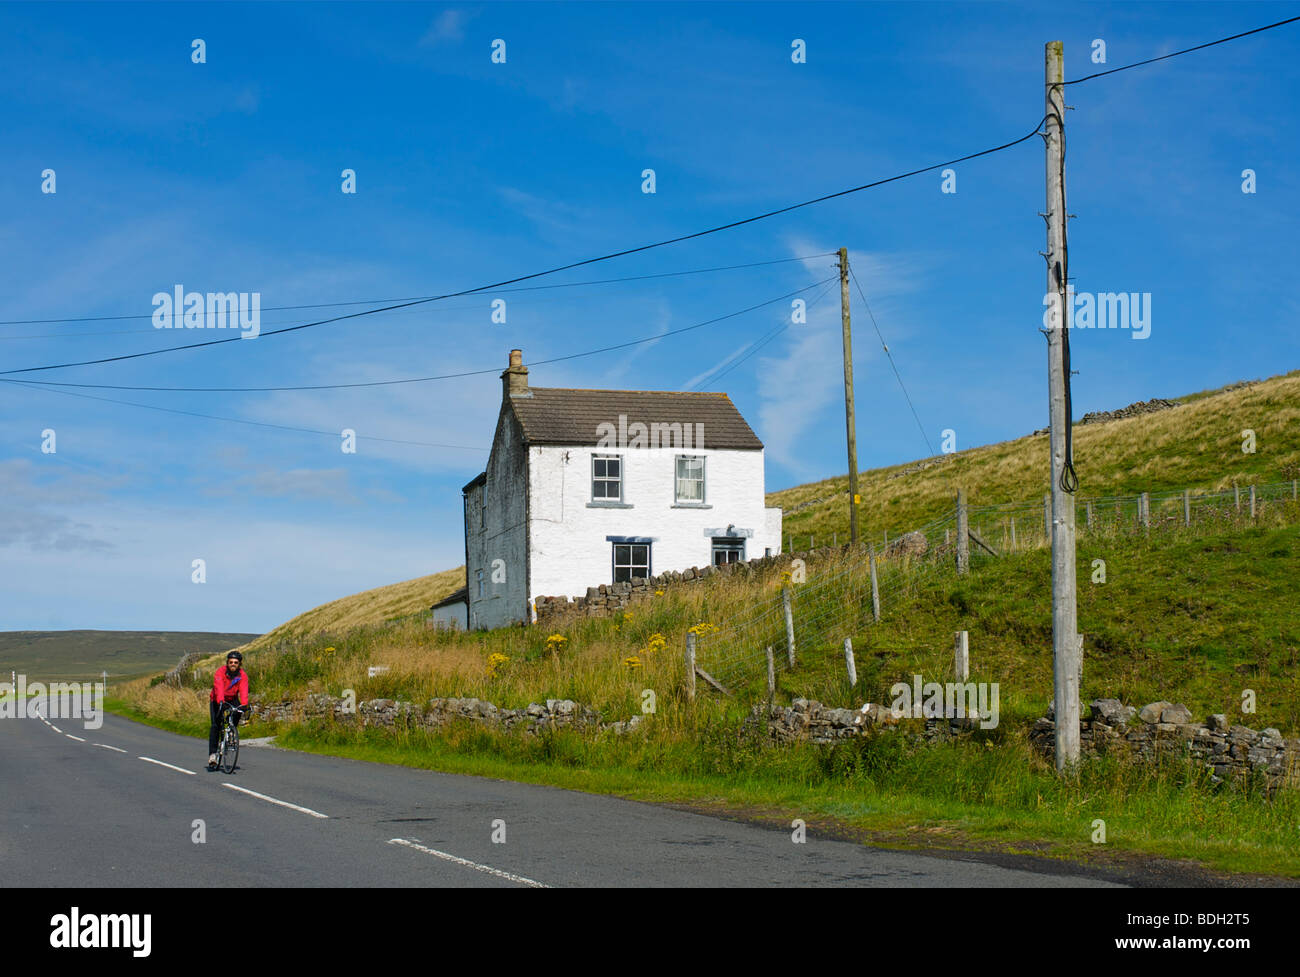 Cycliste dans la région de Teesdale, County Durham, England UK Banque D'Images